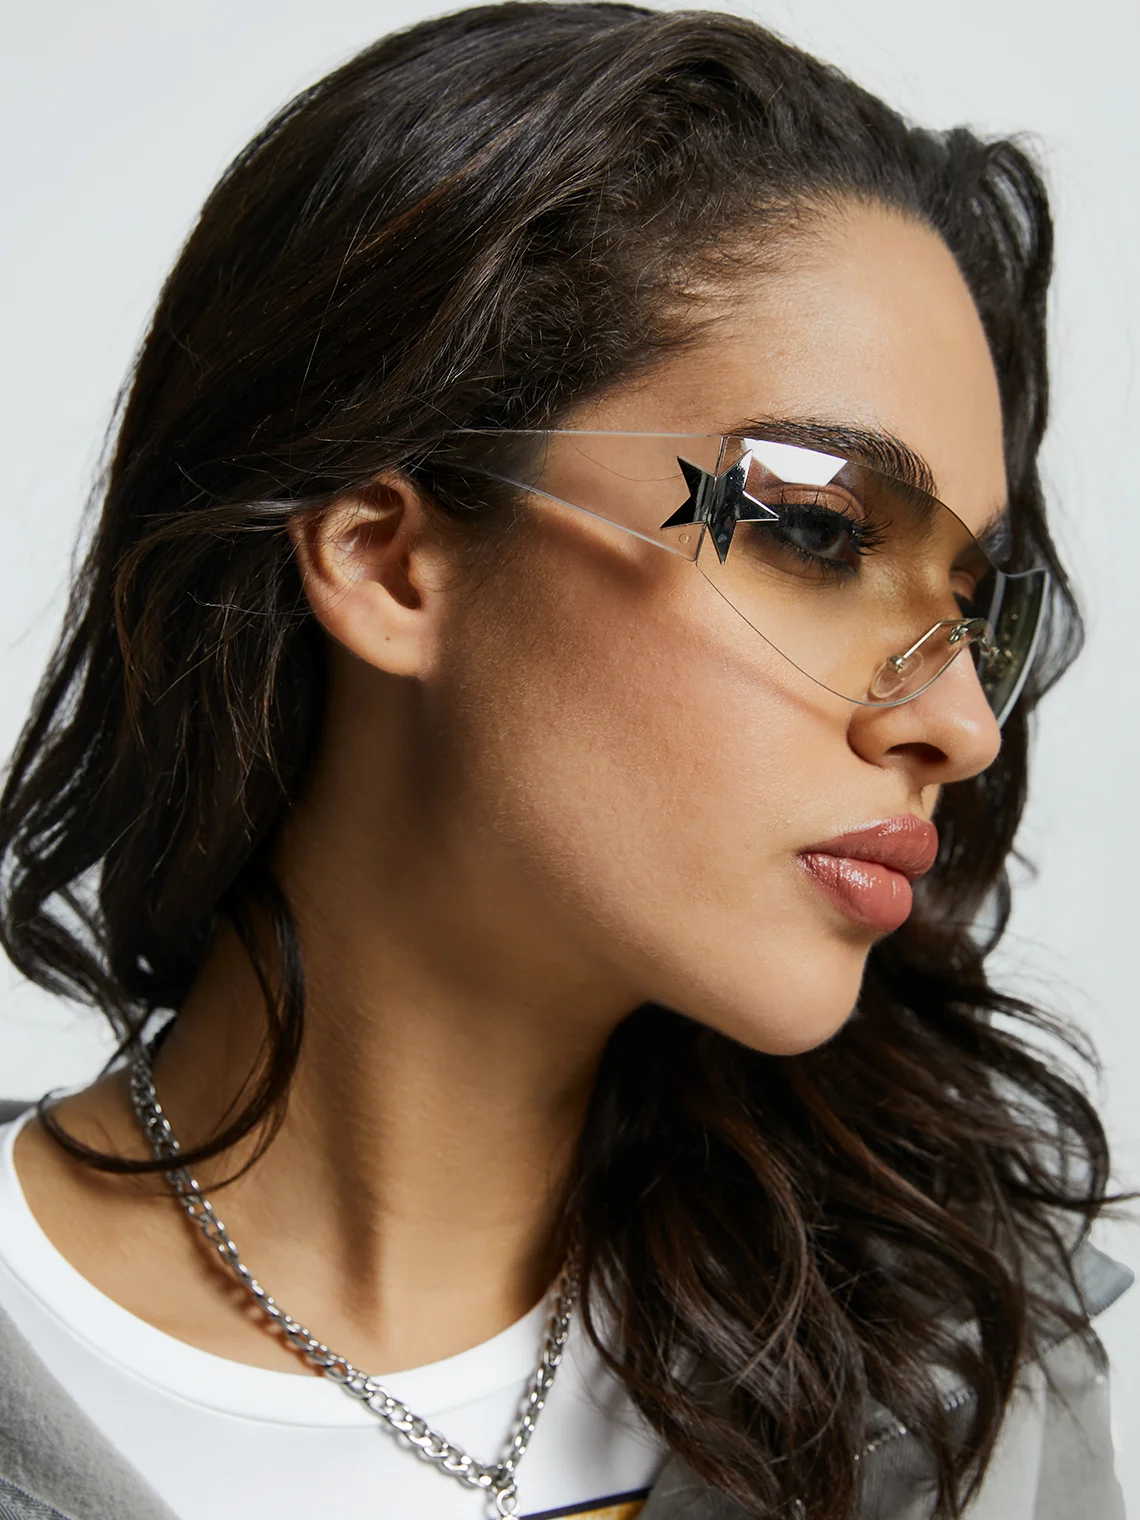 Multi-Color Rimless Fashion Glasses with Box